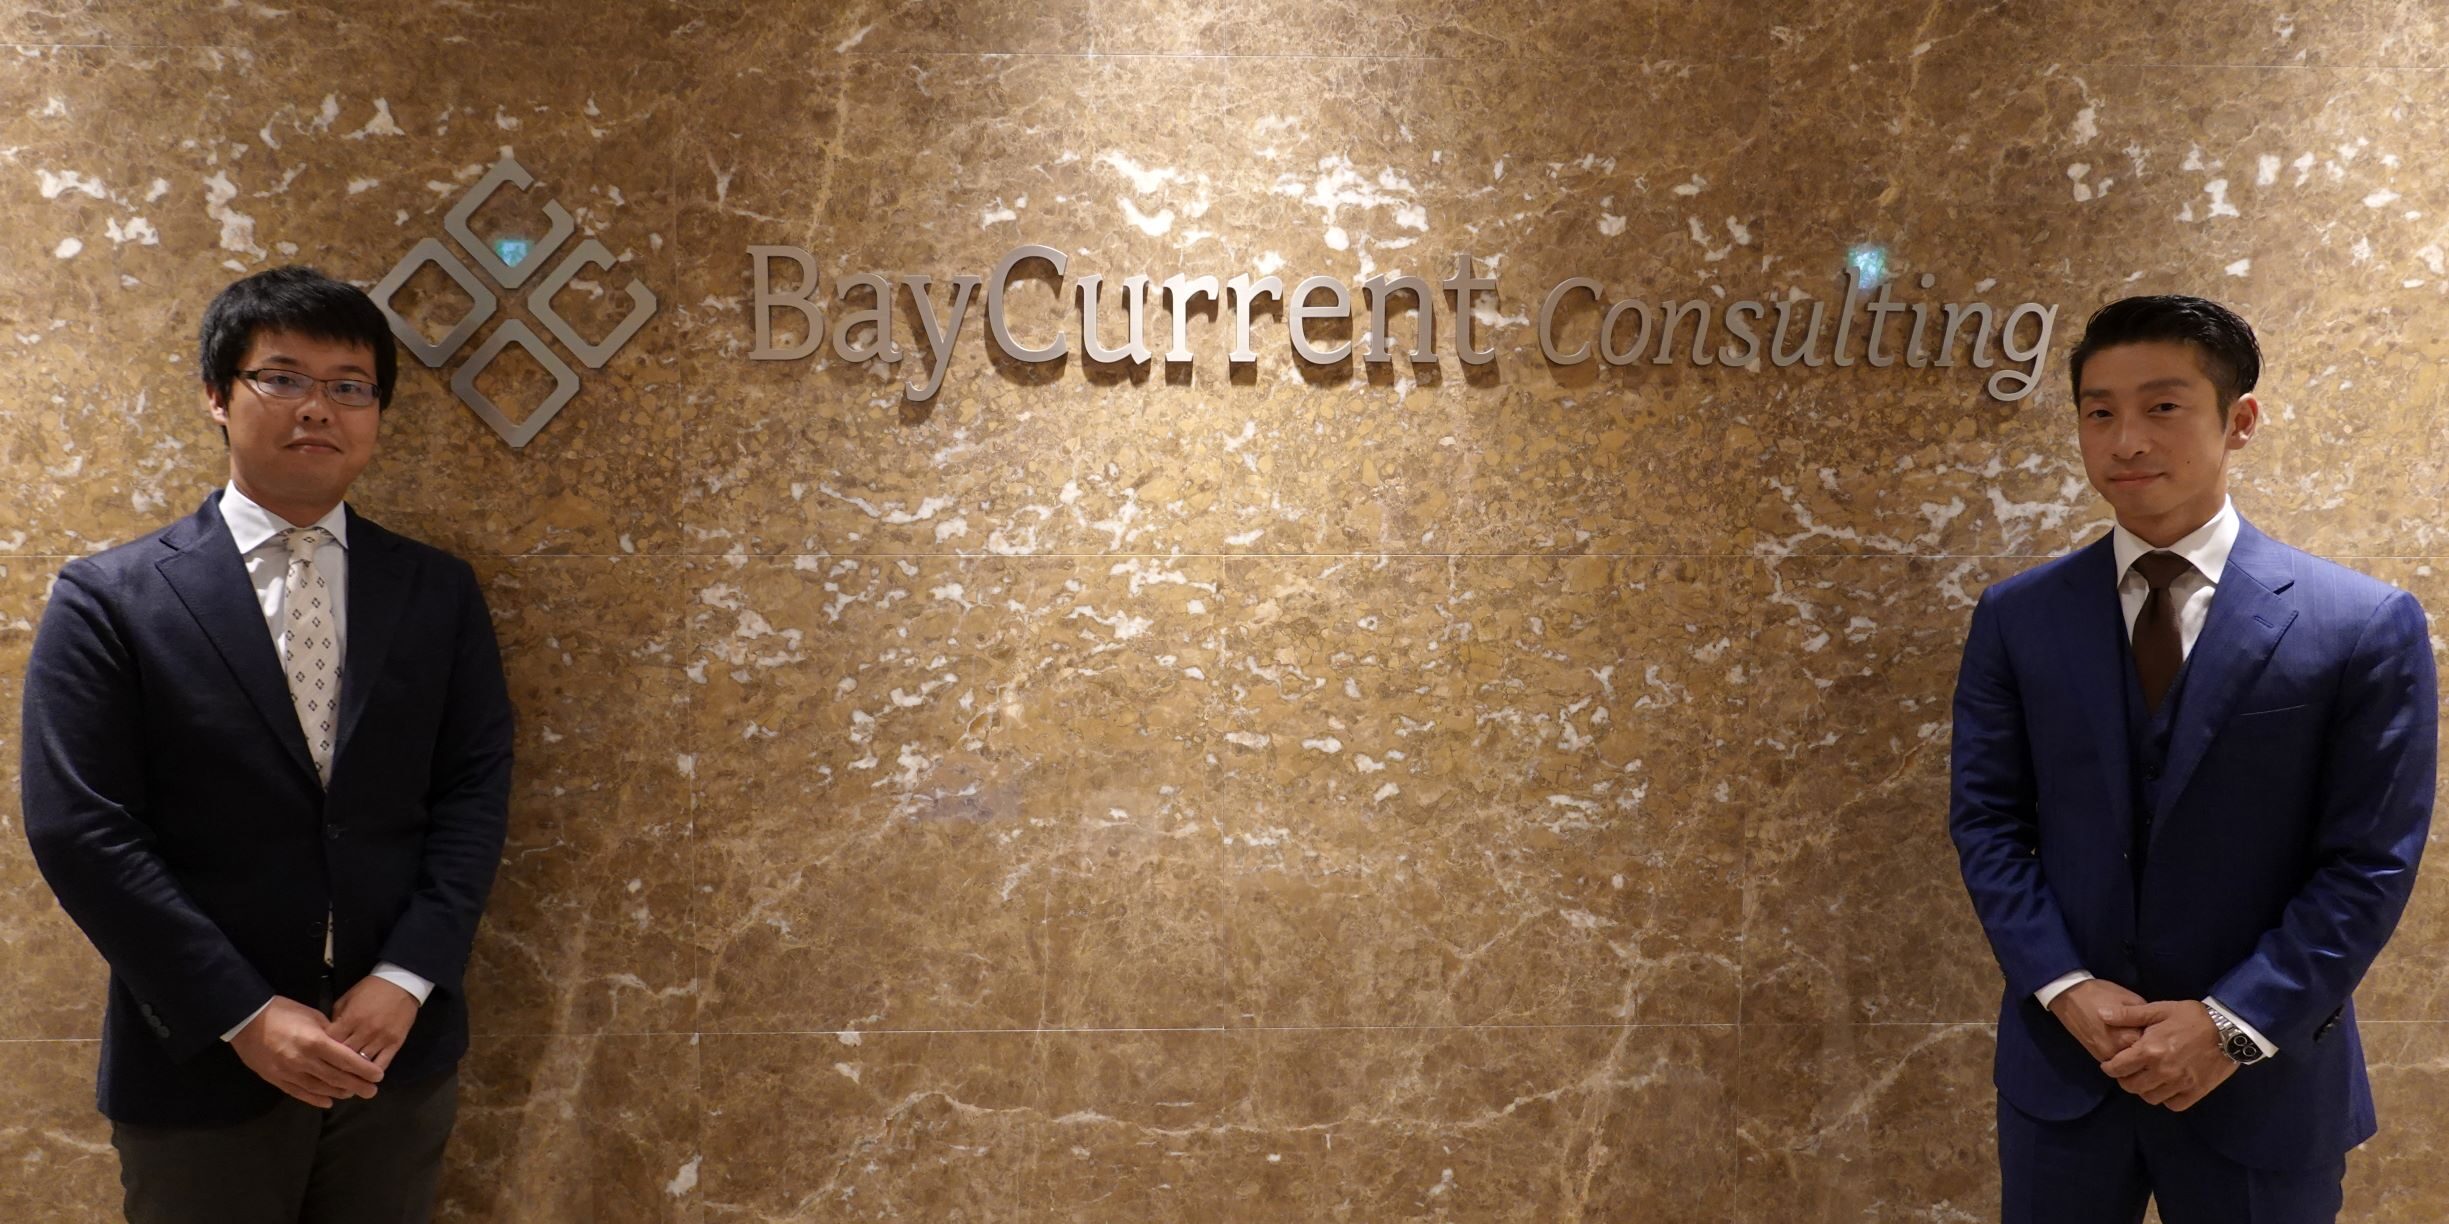 カレント 株式 会社 コンサルティング ベイ ベイカレント・コンサルティングの歴史・創業ストーリー